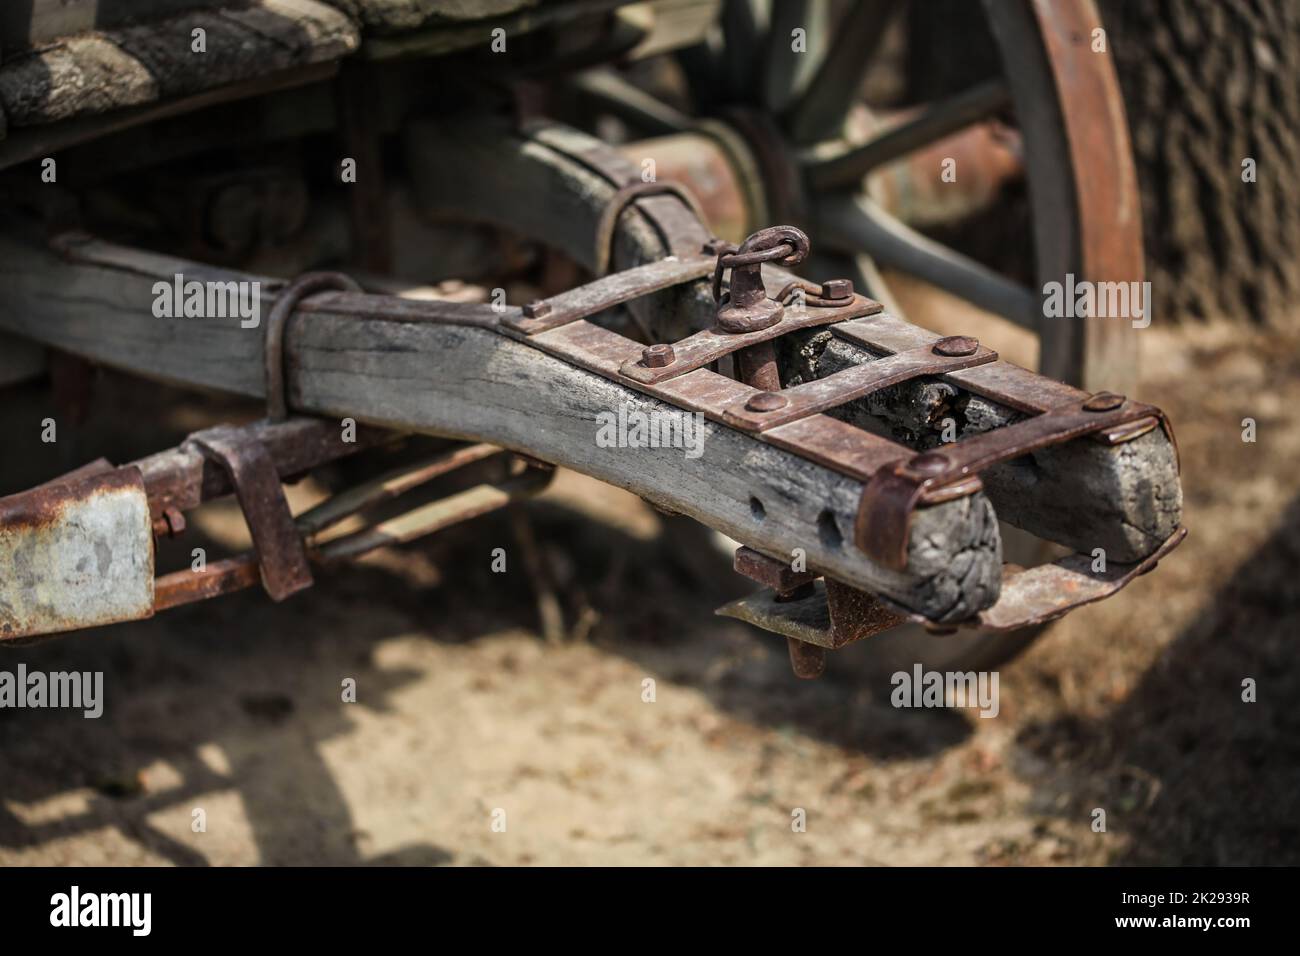 Dettagli sul vecchio arrugginito carro in legno il meccanismo di collegamento. Foto Stock